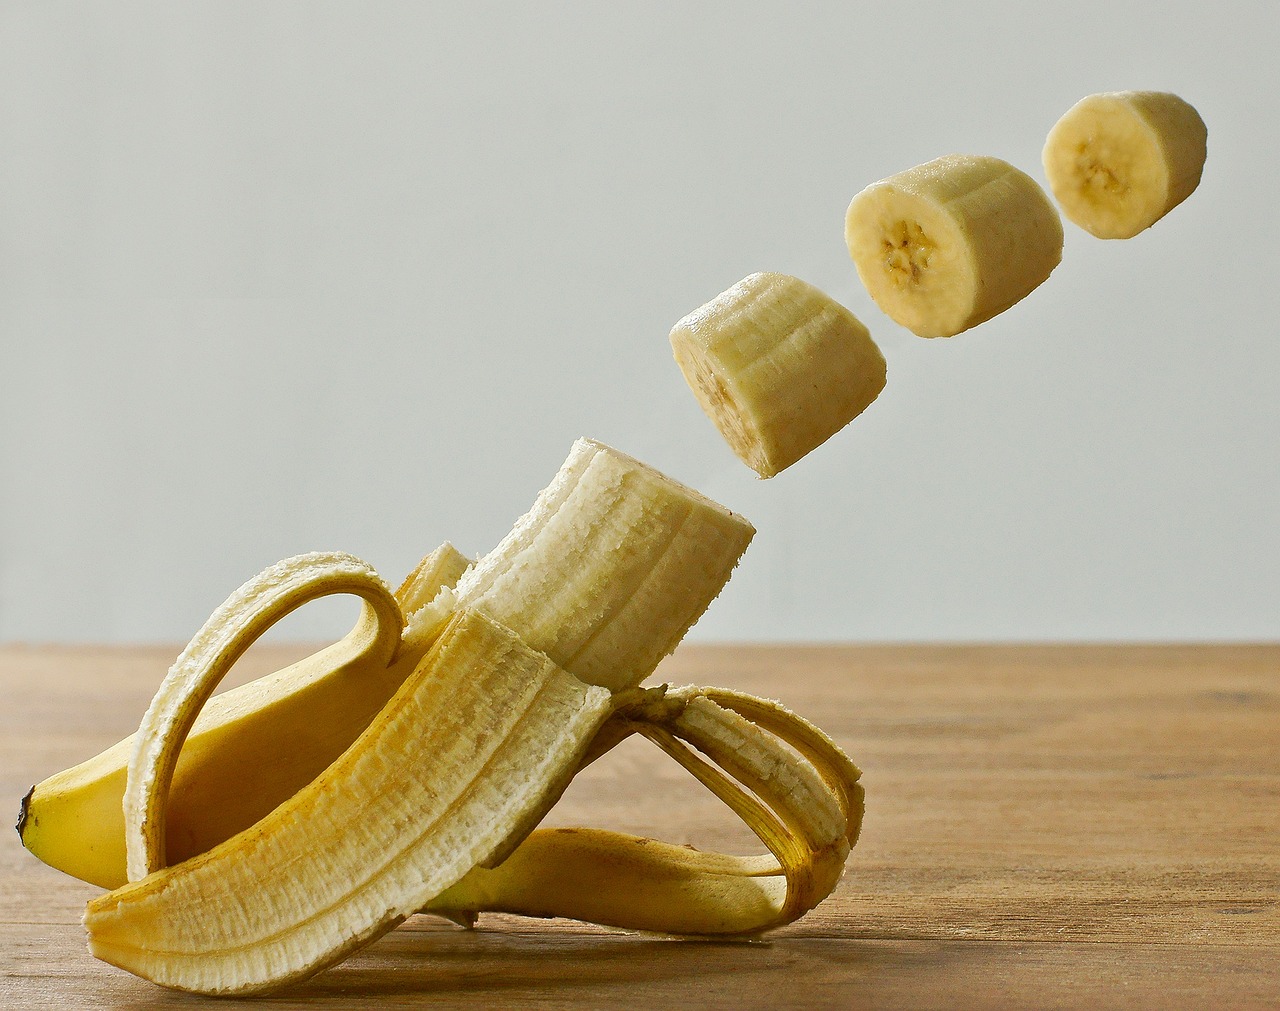 Kodėl verta į mitybą įtraukti bananus ir ar jie padeda mesti svorį?